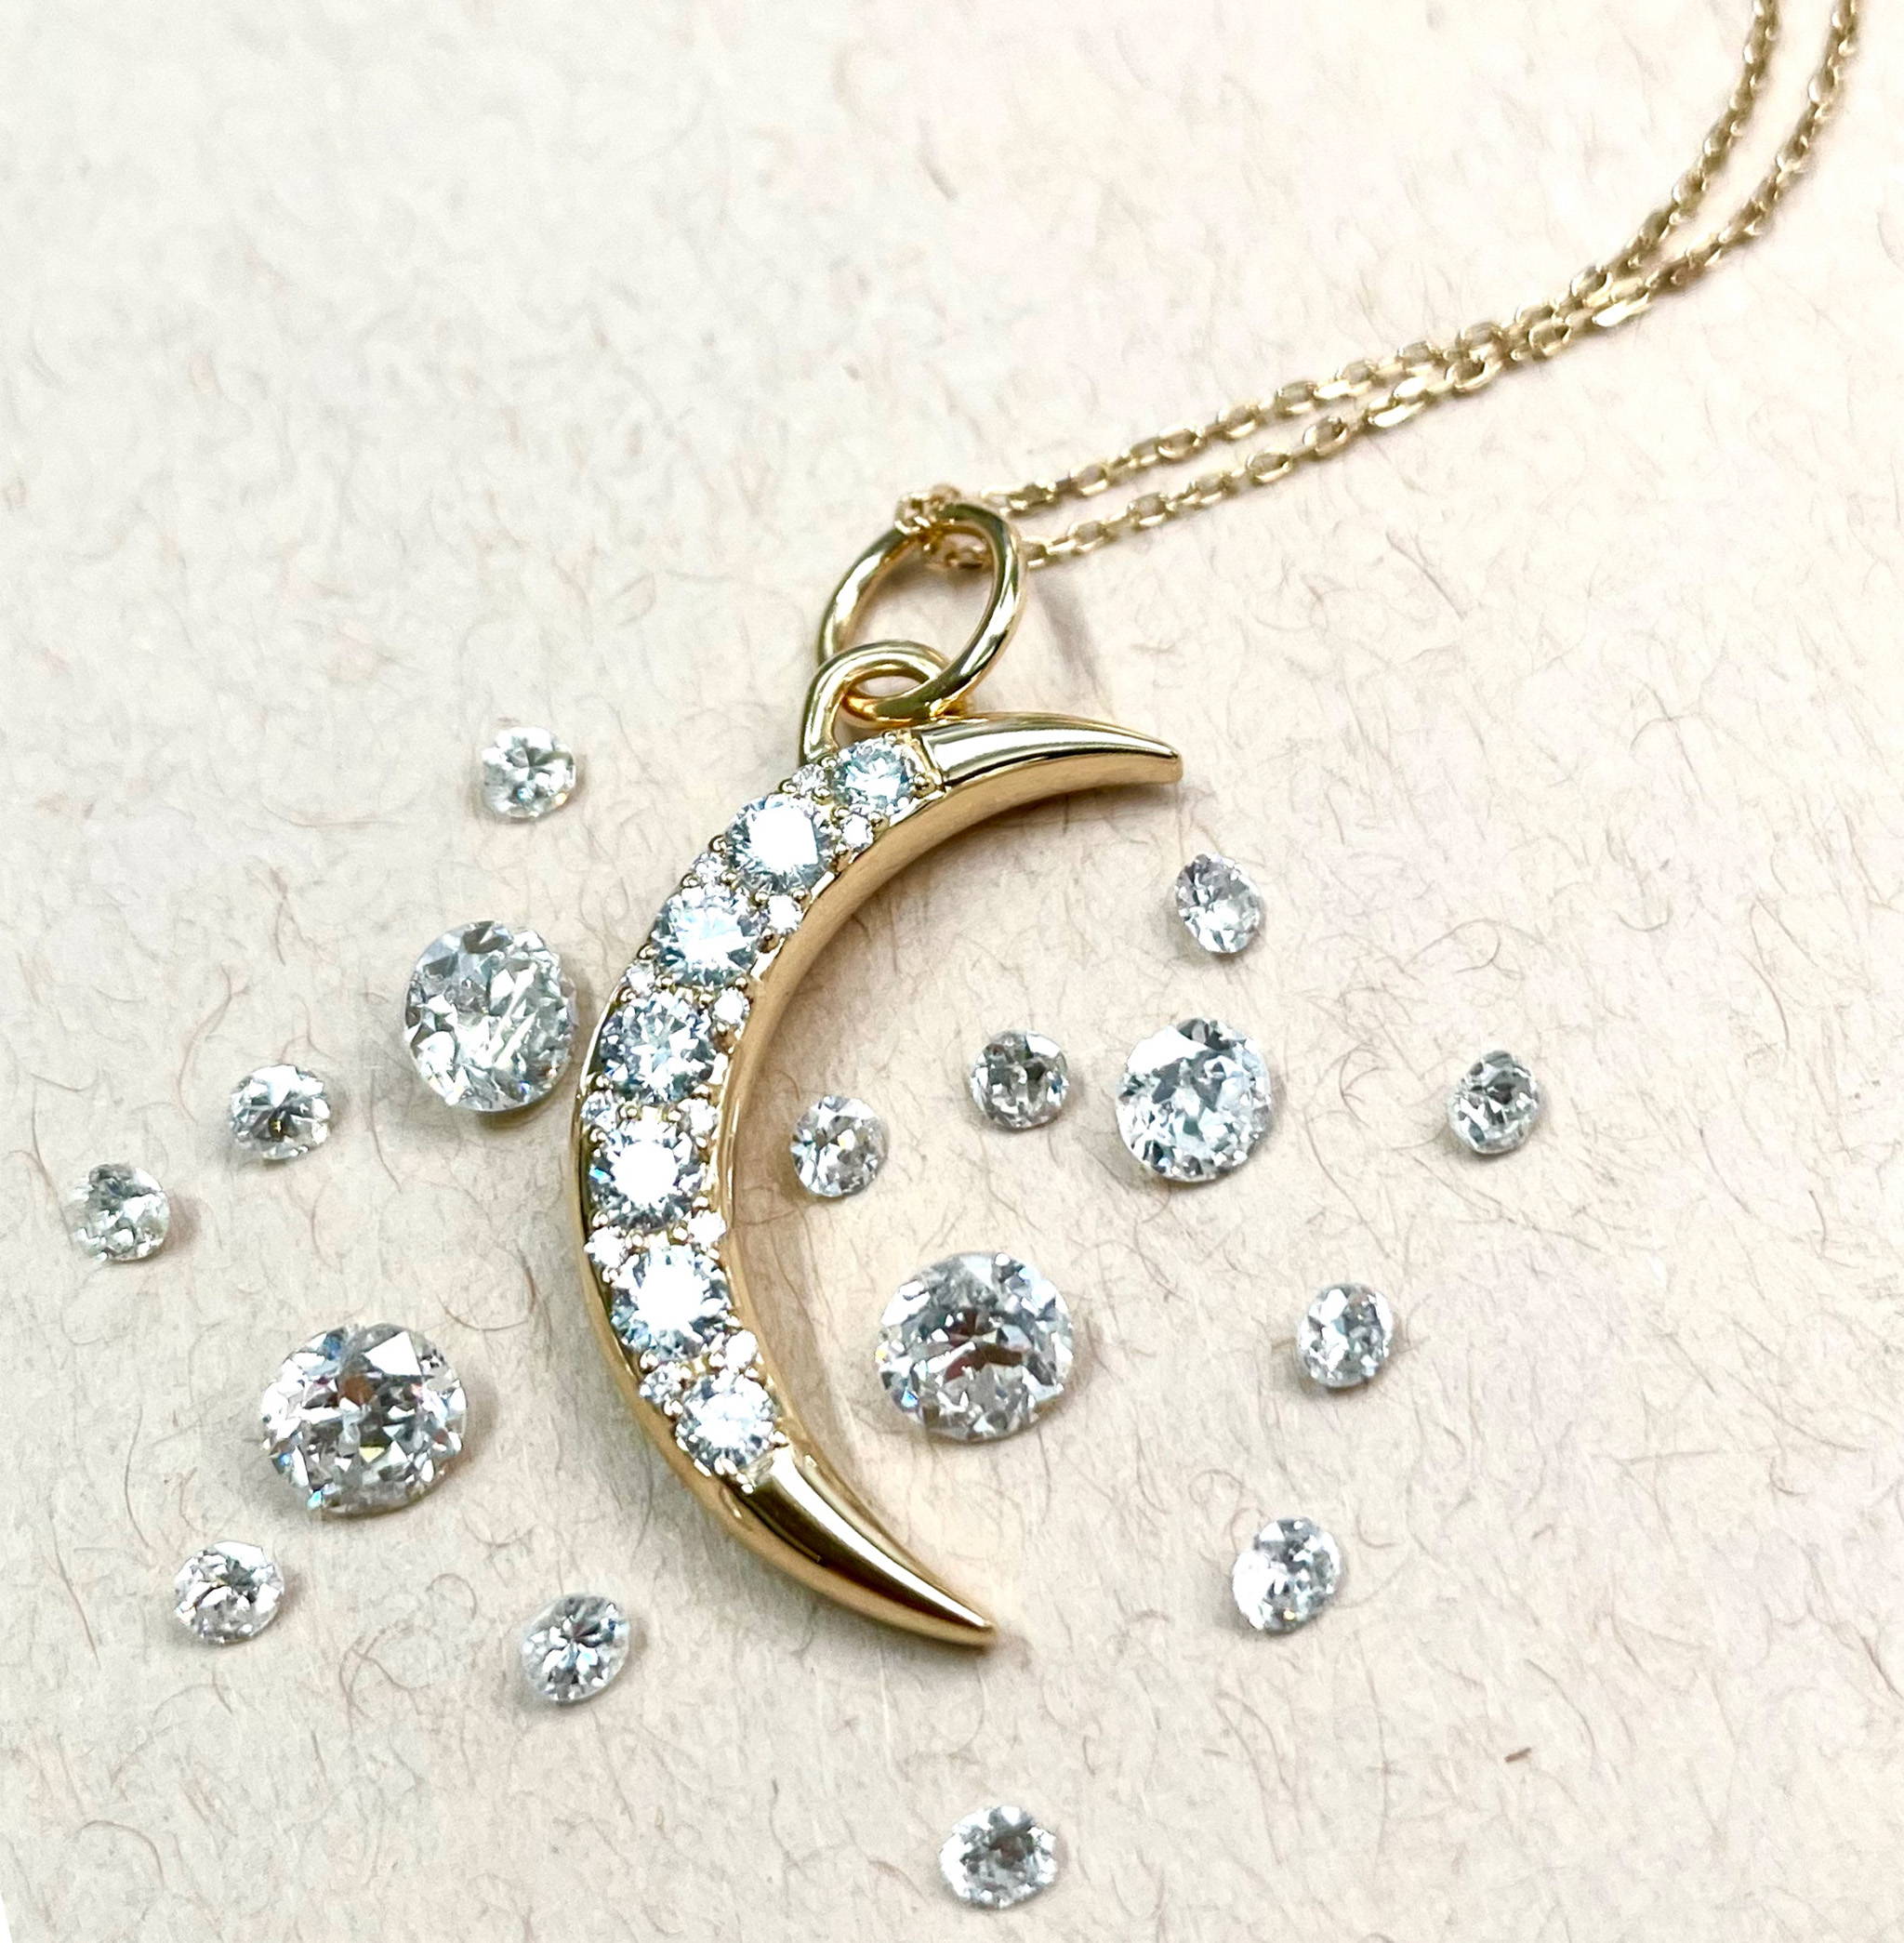 Shop diamond jewelry